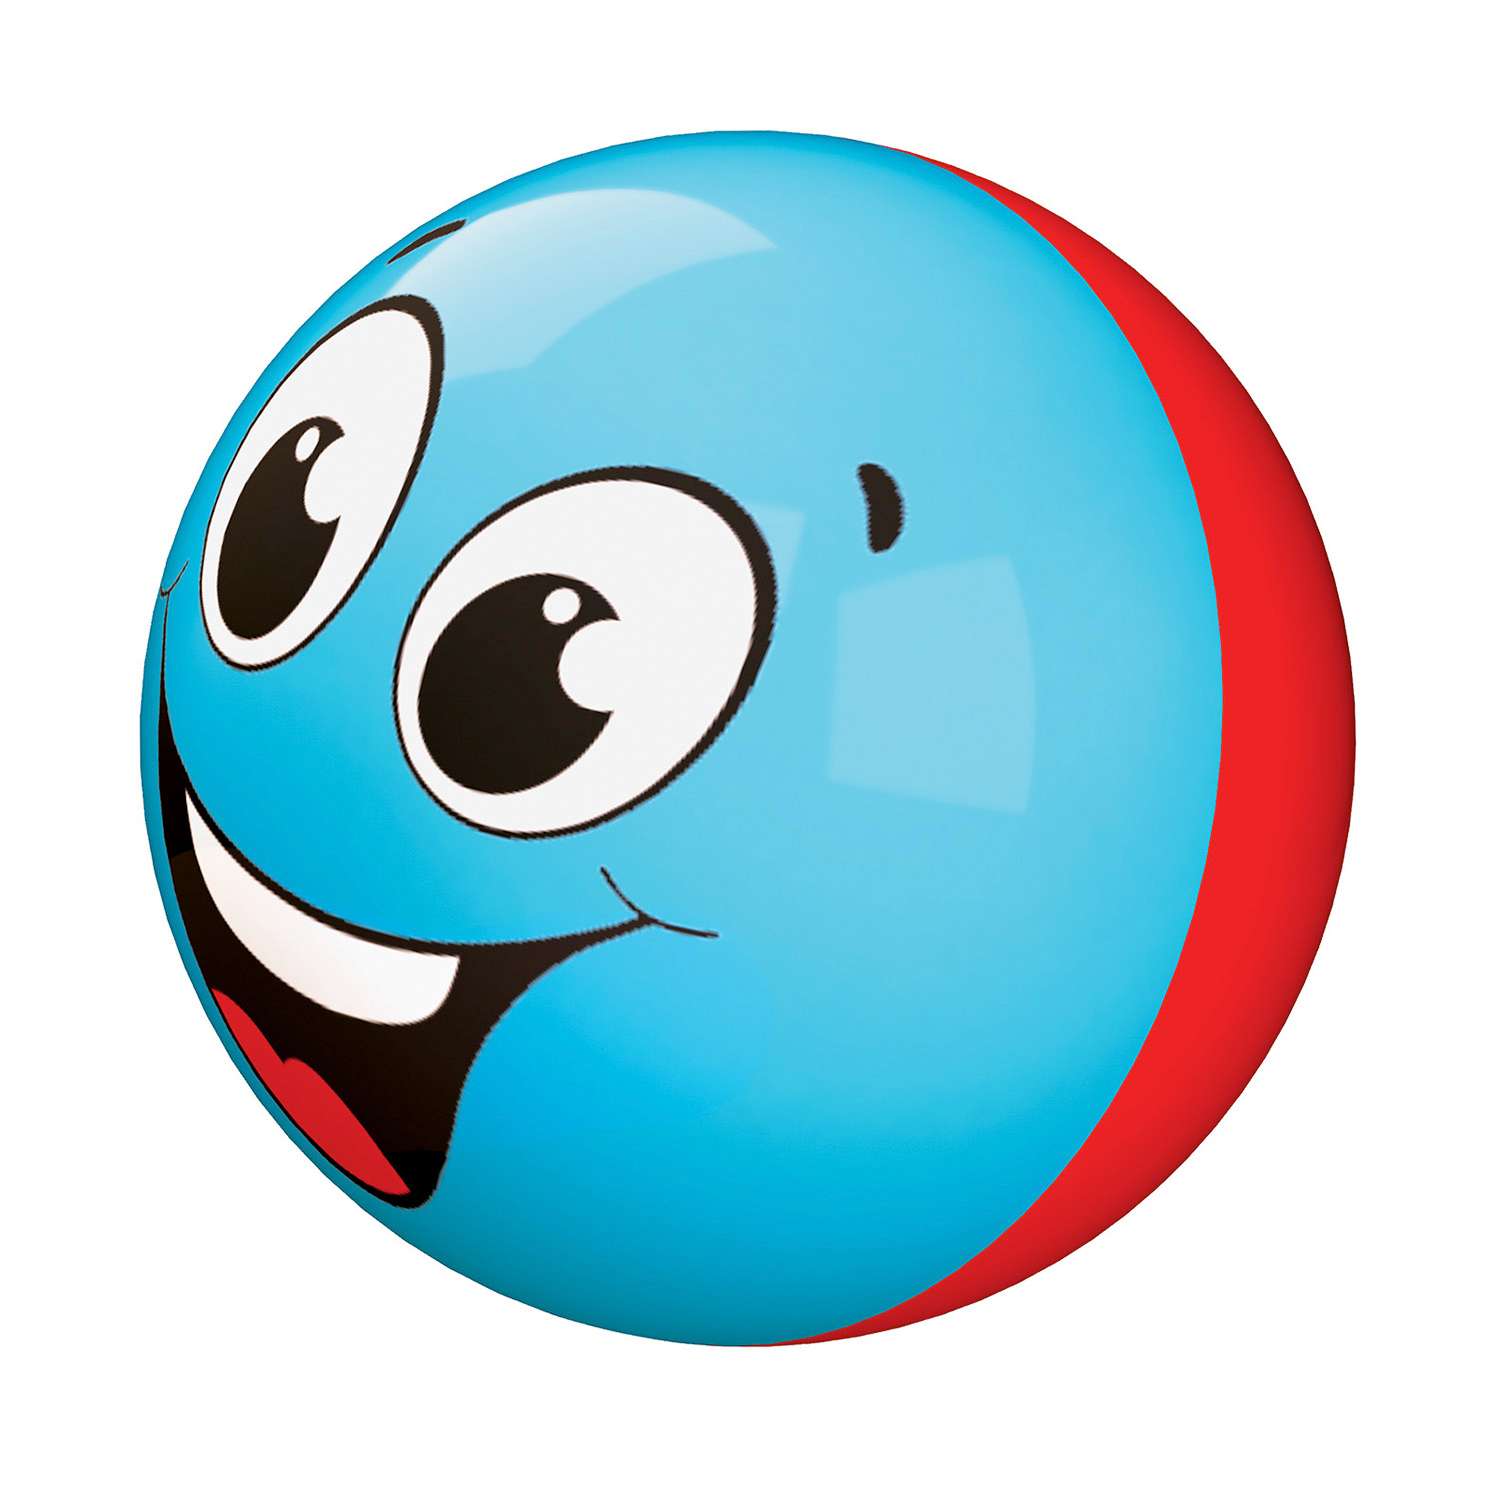 Игрушка Азбукварик Веселый смайлик Голубой - фото 1